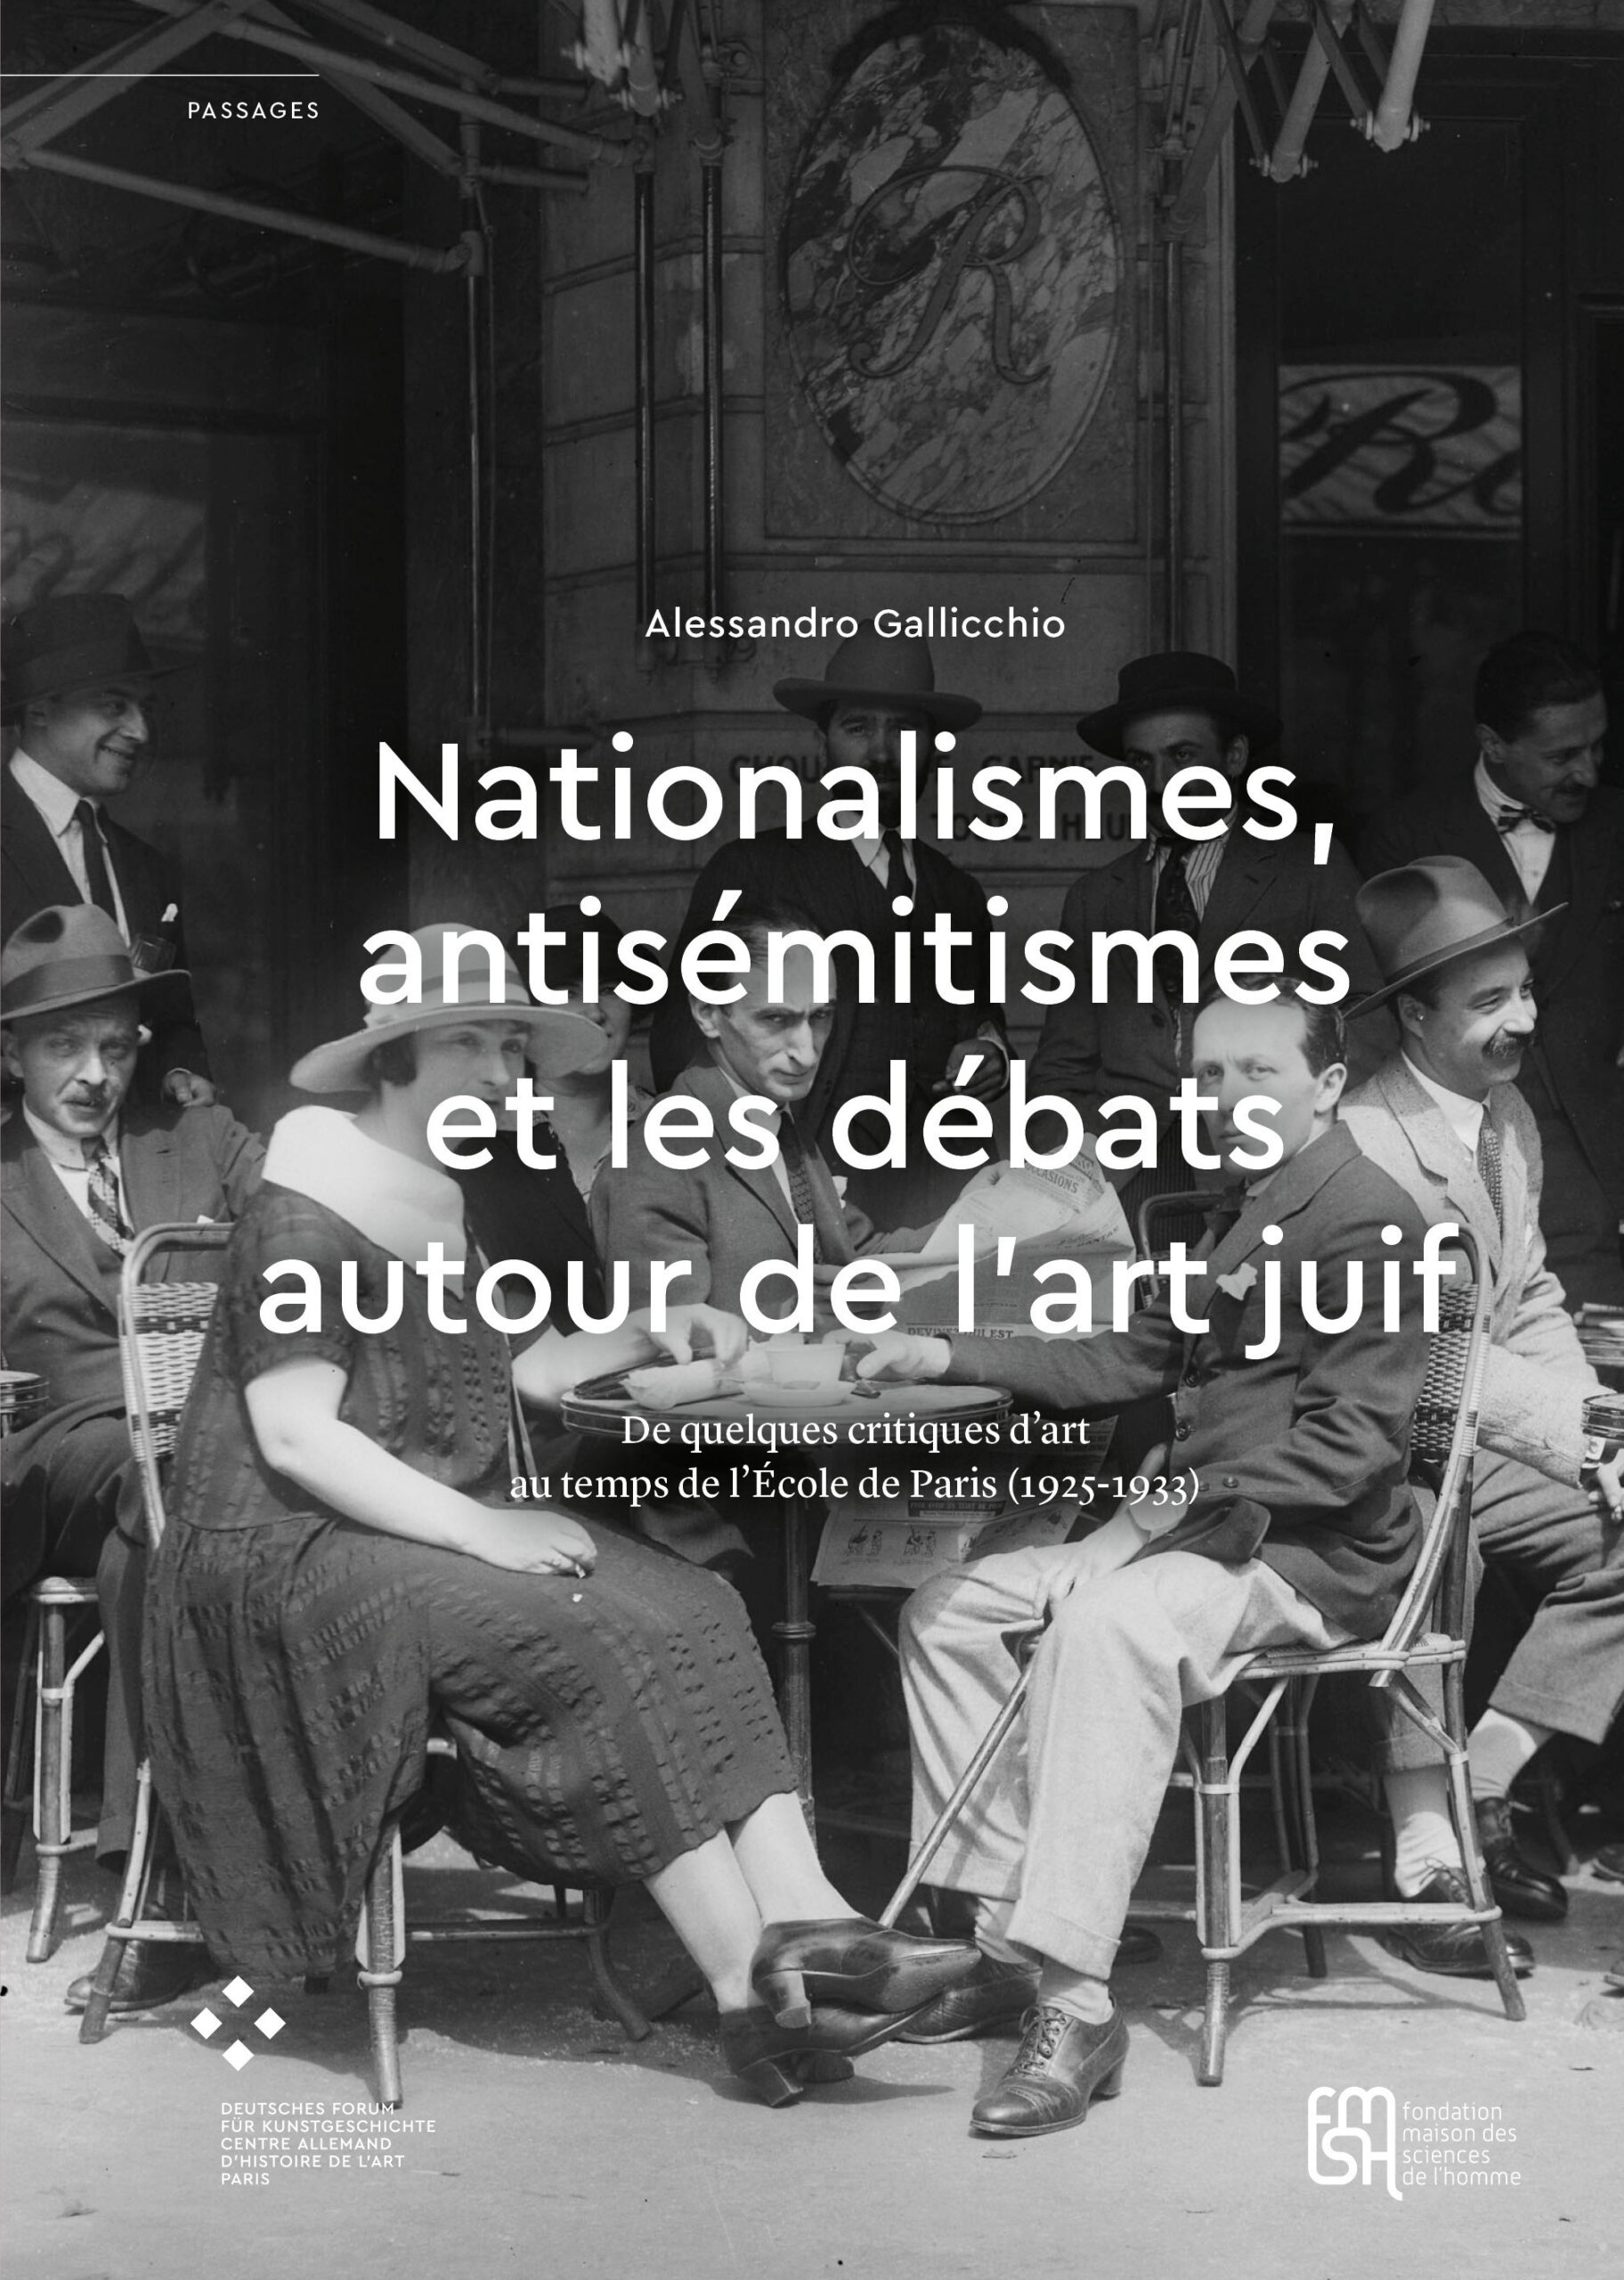 Nationalismes, antisémitismes et les débats autour de l'art juif